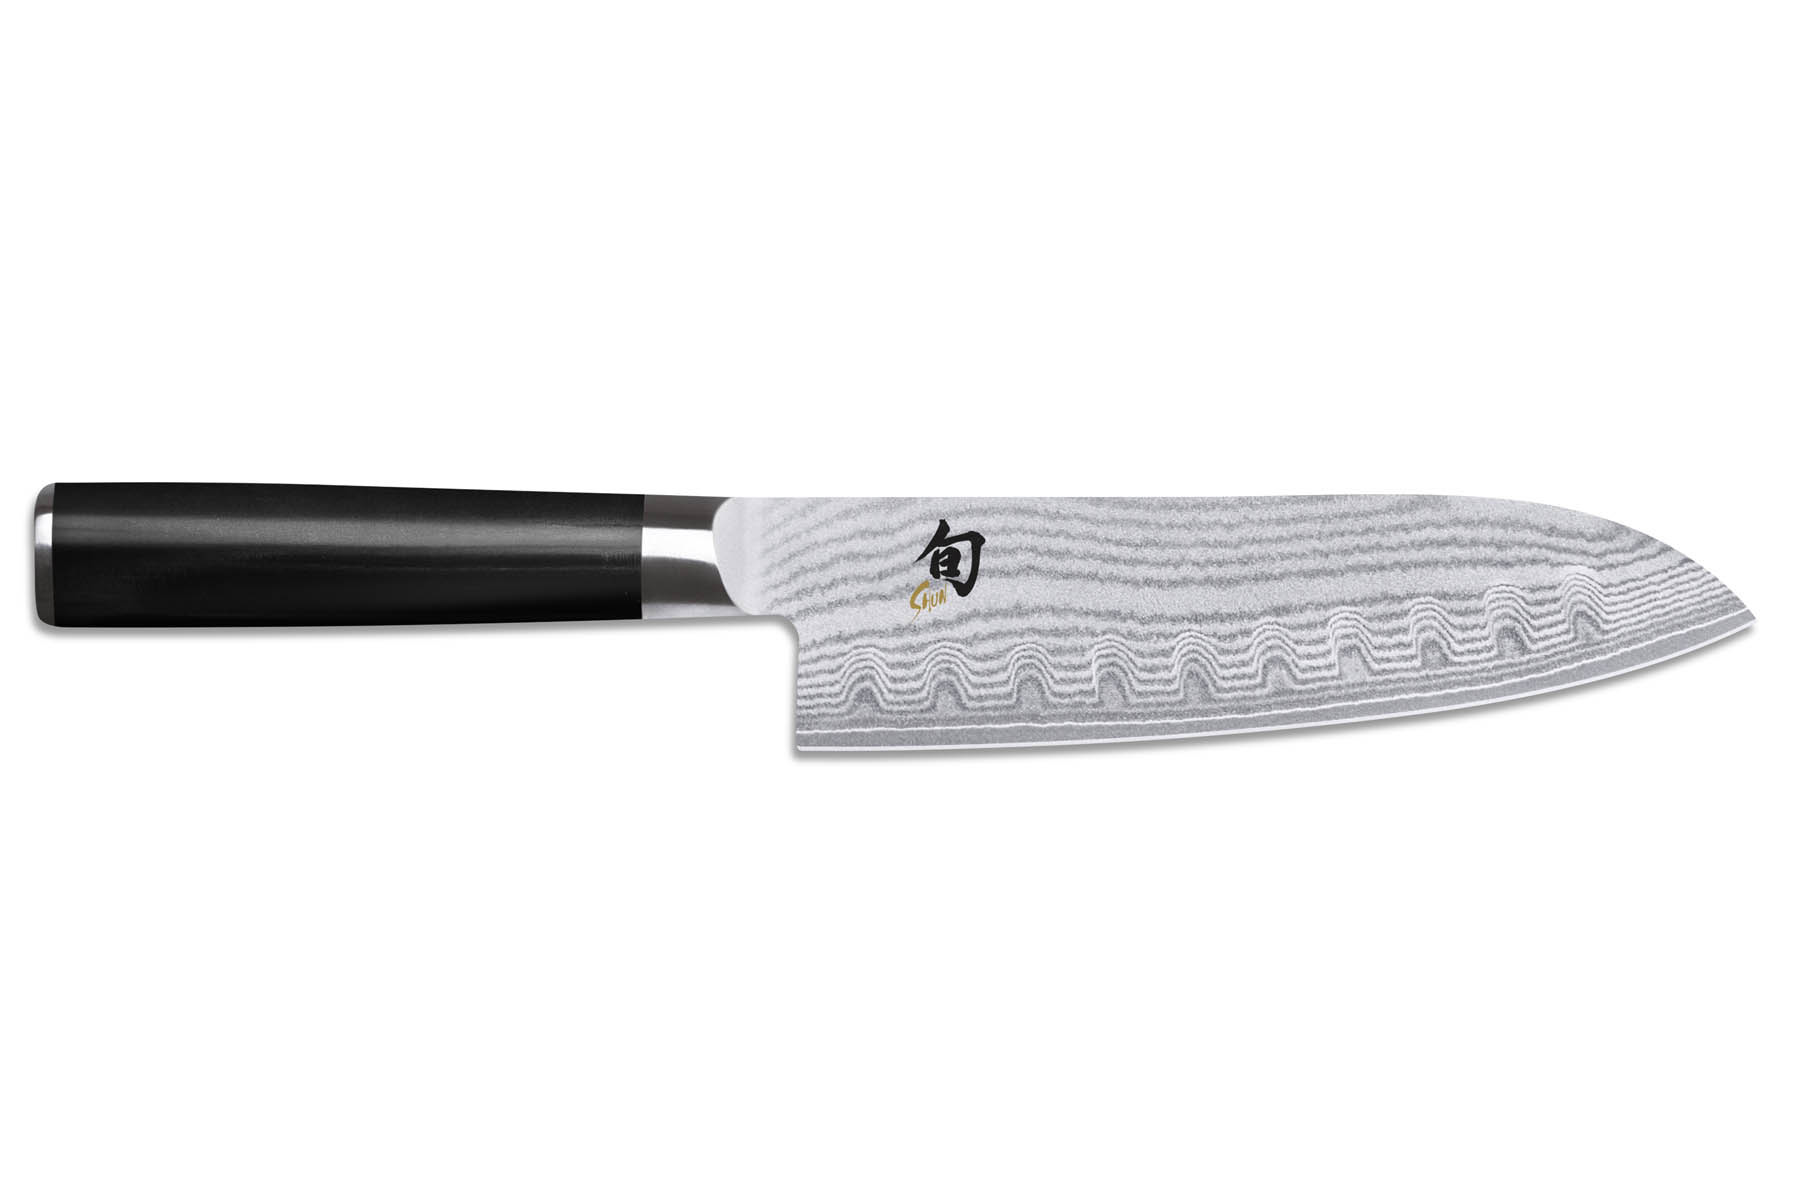 Couteau japonais Santoku 18 cm Kai shun classic damas - lame alvéolée